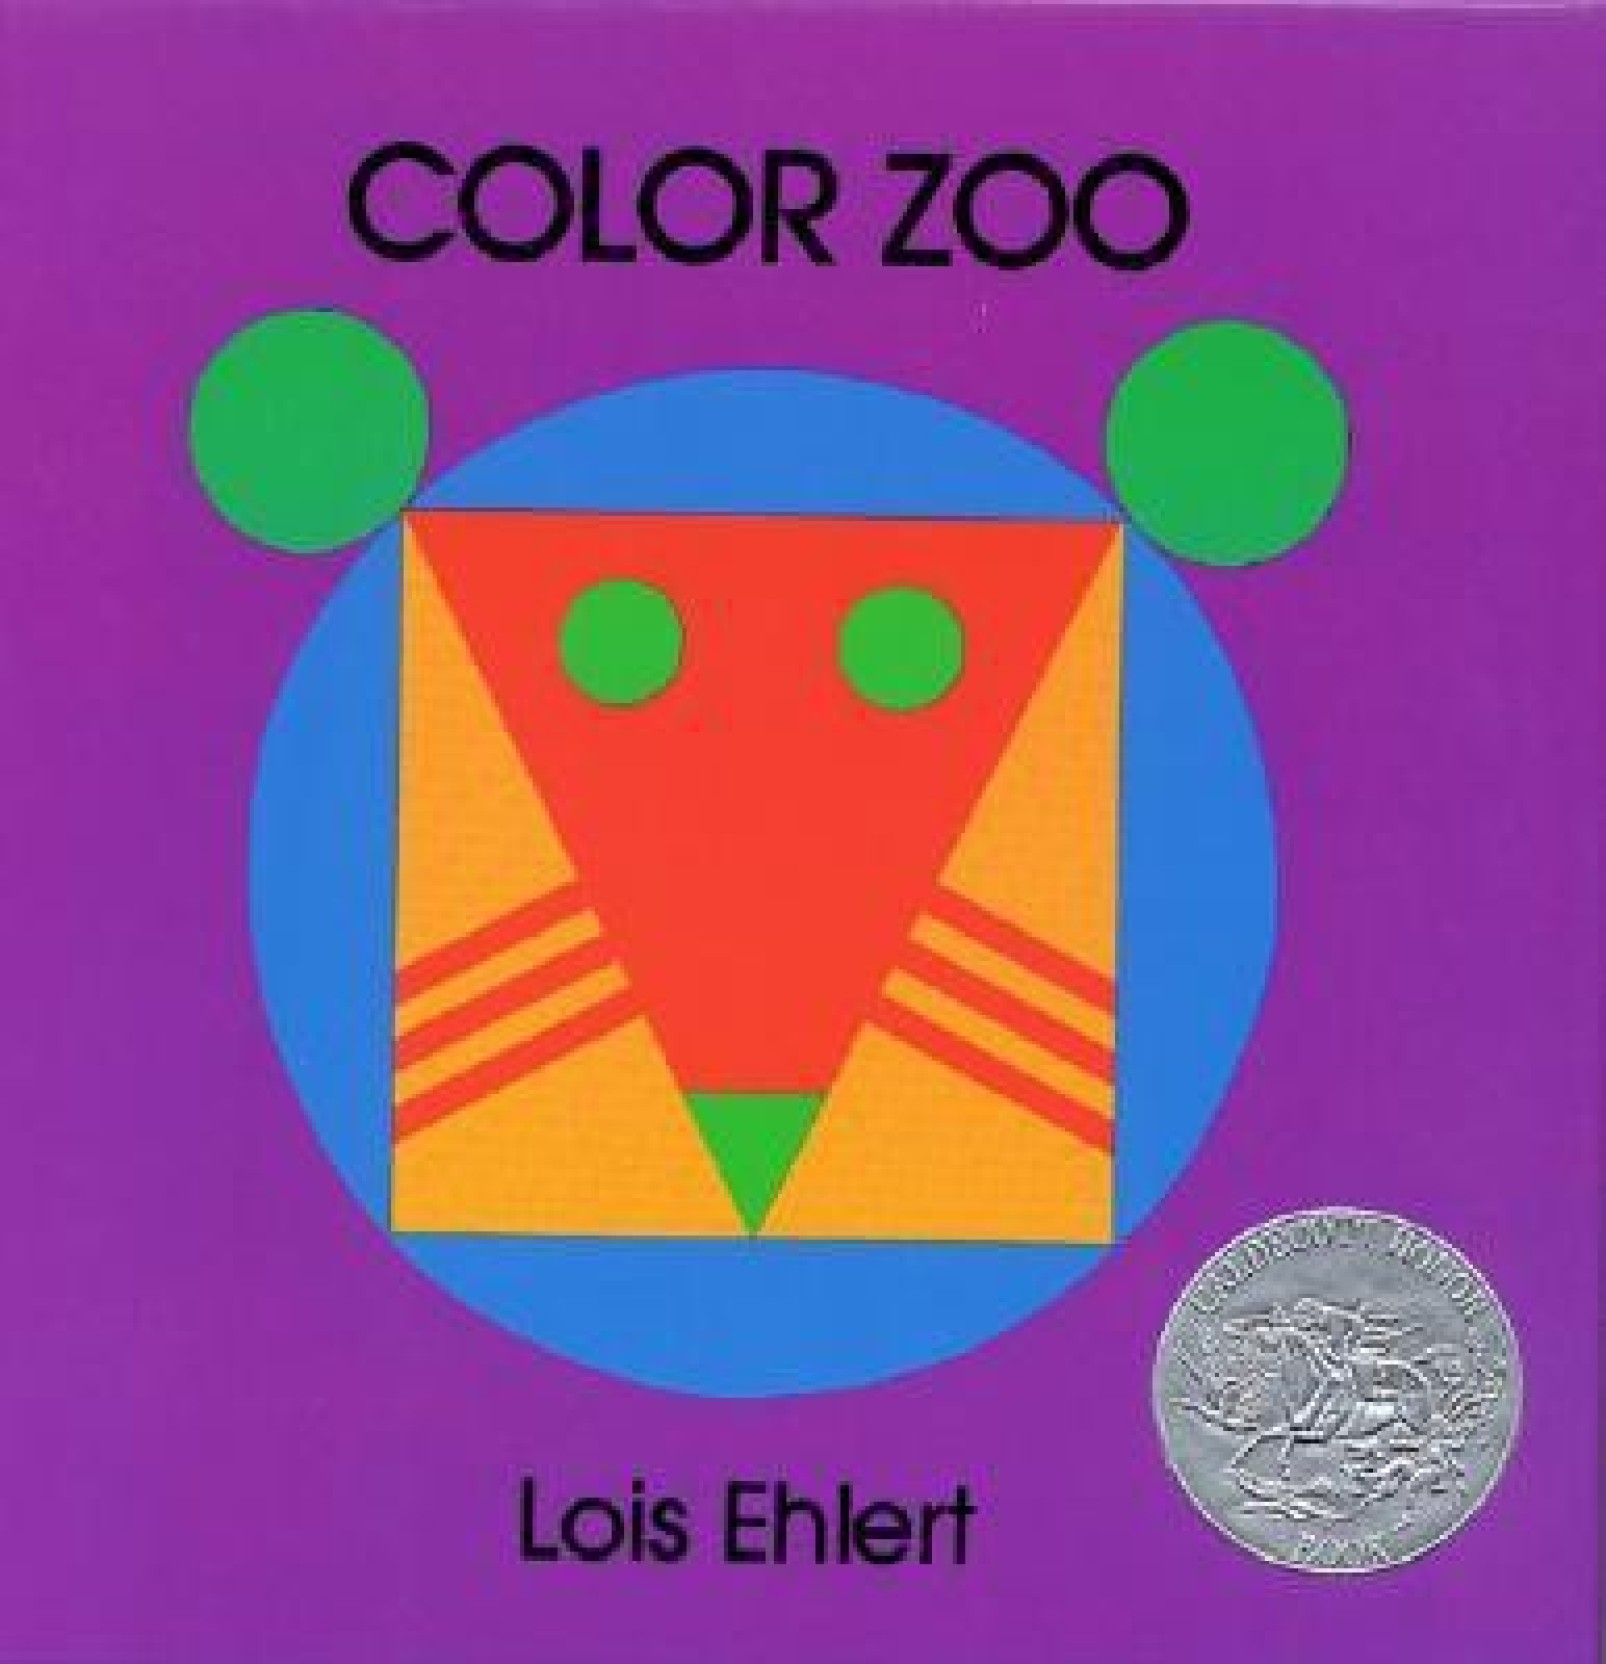 color-zoo-color-zoo-original-imaeak45j4qt3zcd.jpeg